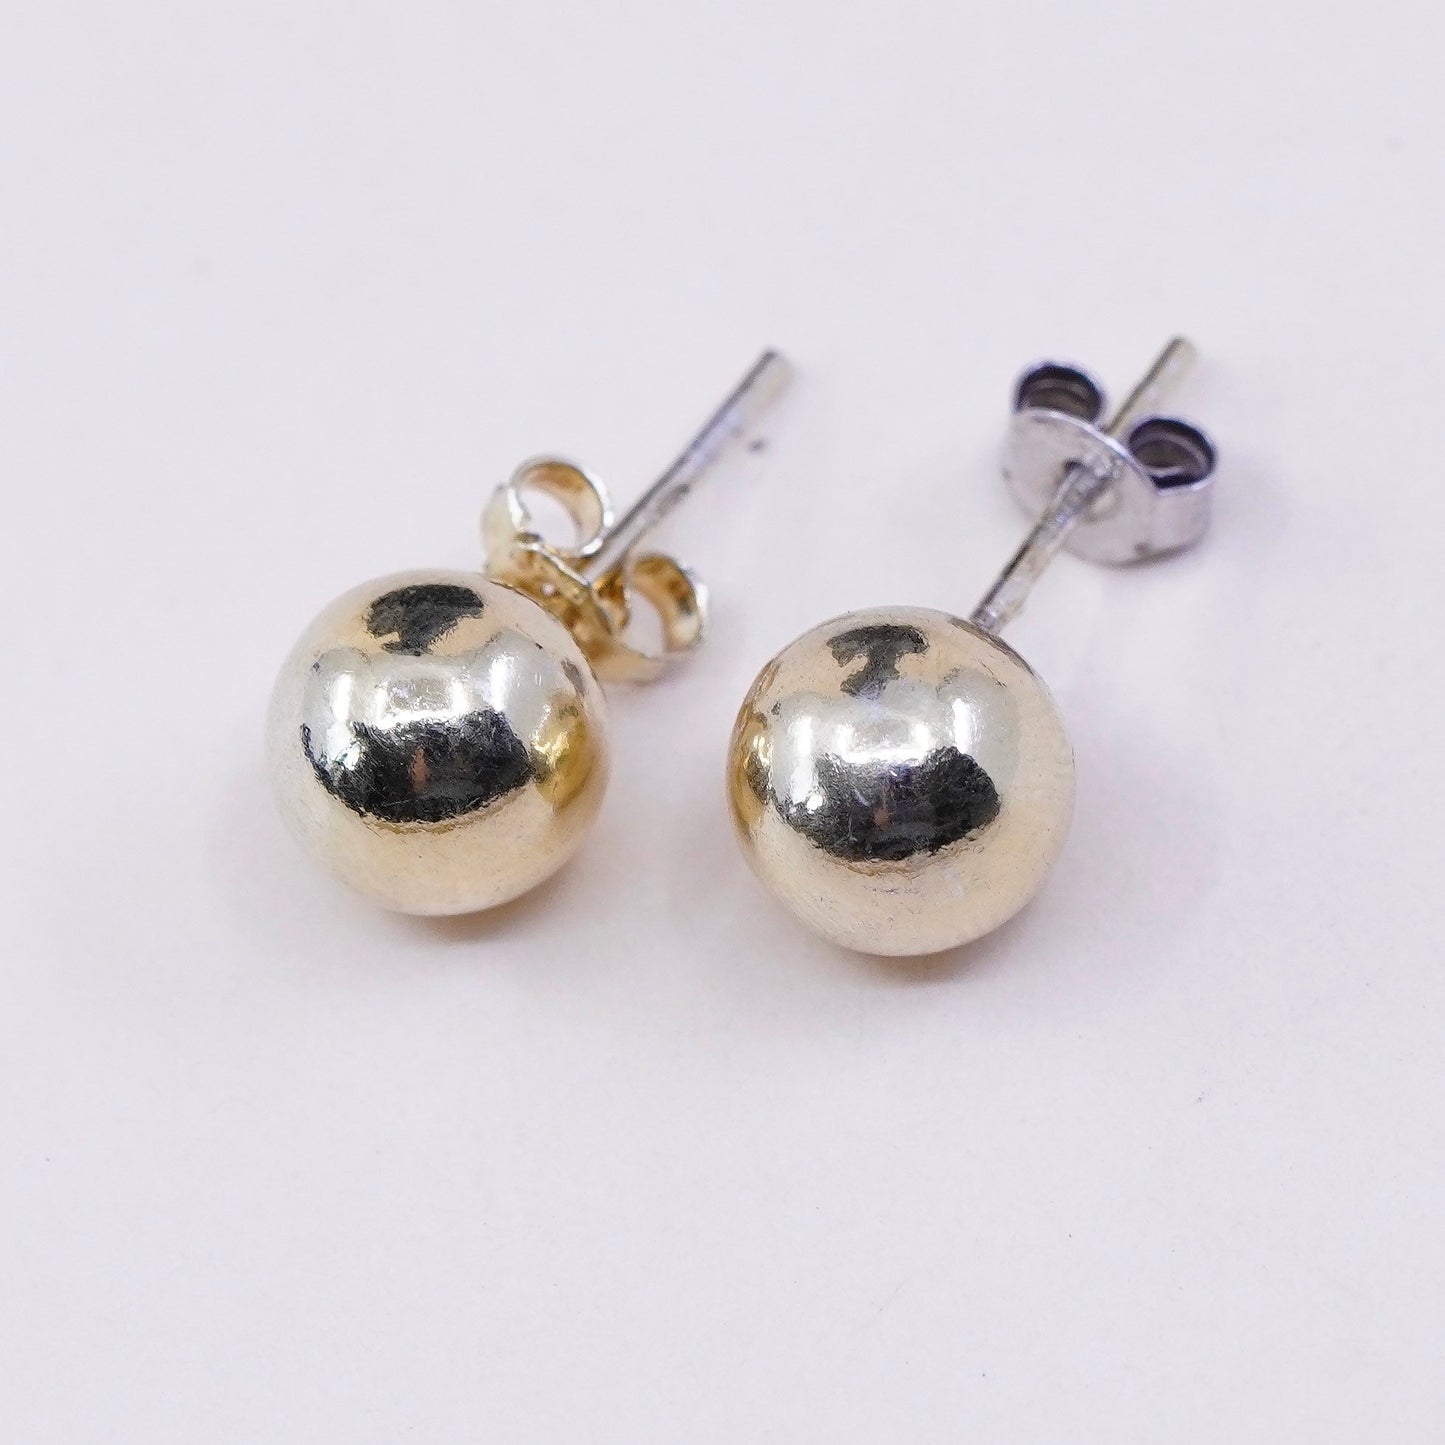 6mm, Vintage vermeil gold over sterling silver sphere studs, handmade 925 earrings, stamped 925